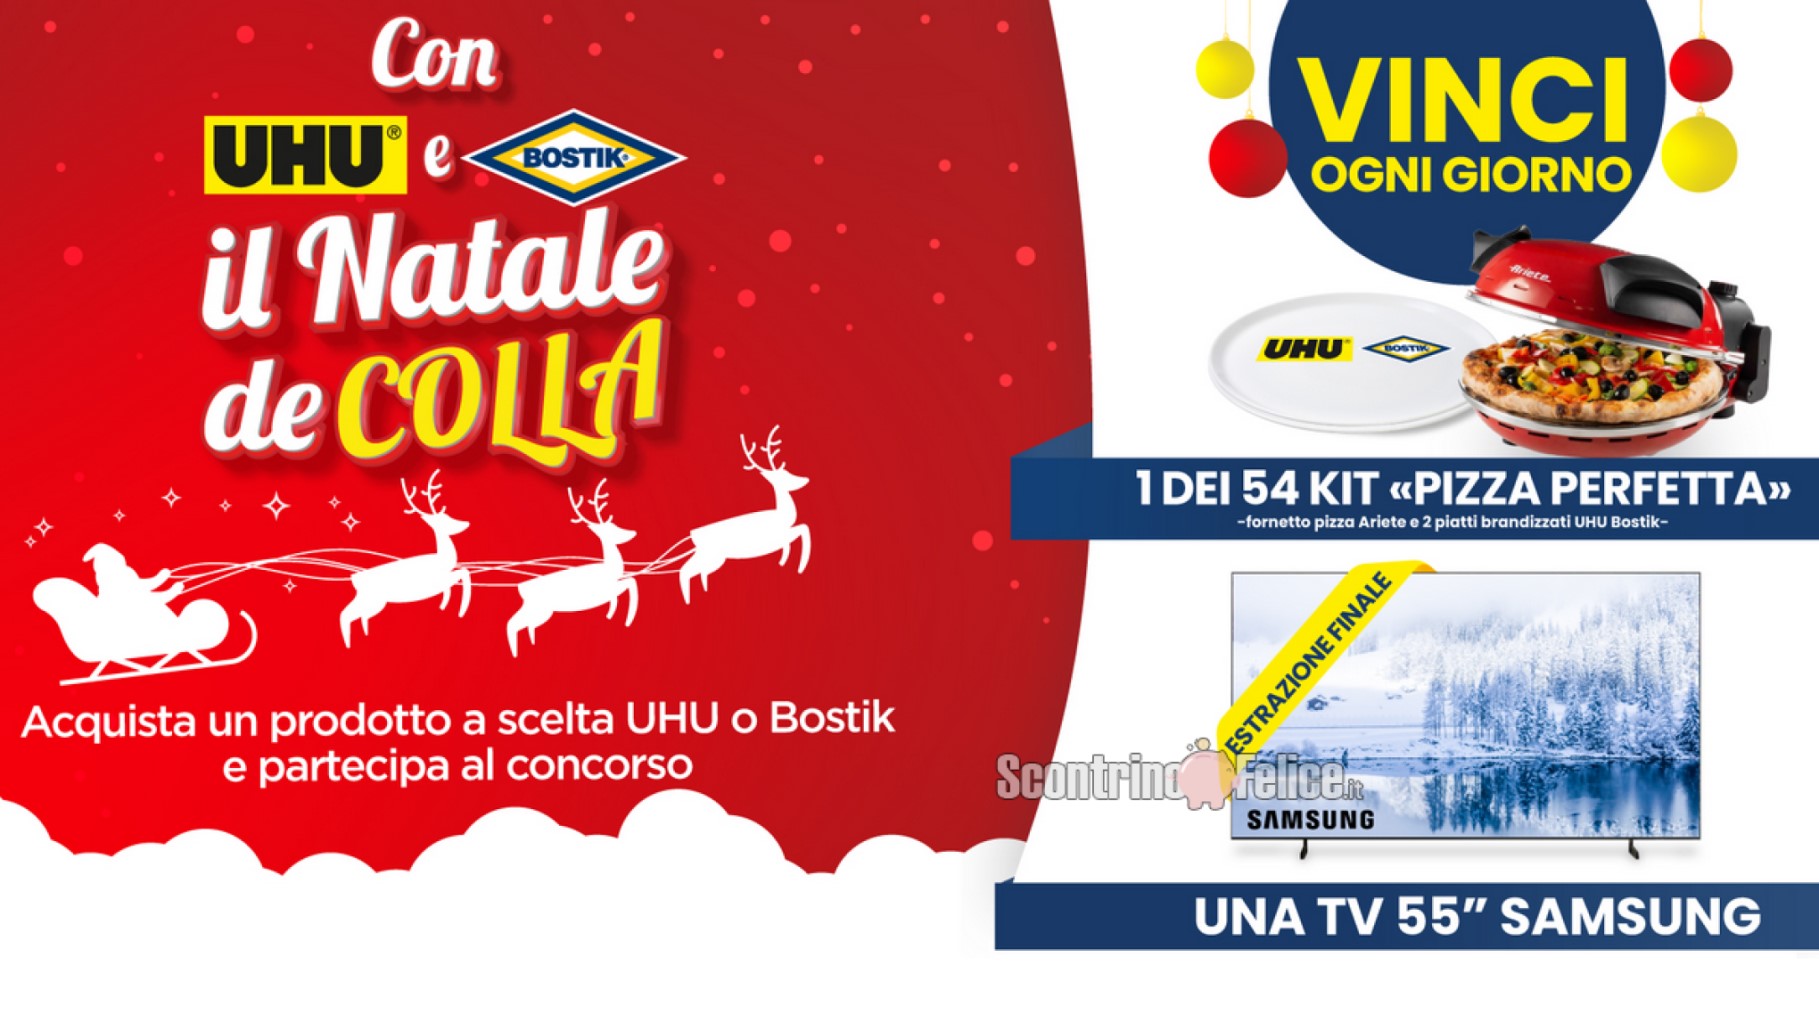 Concorso “Con UHU e BOSTIK il Natale deCOLLA”: in palio Kit Pizza Perfetta e 1 TV Samsung da 55”